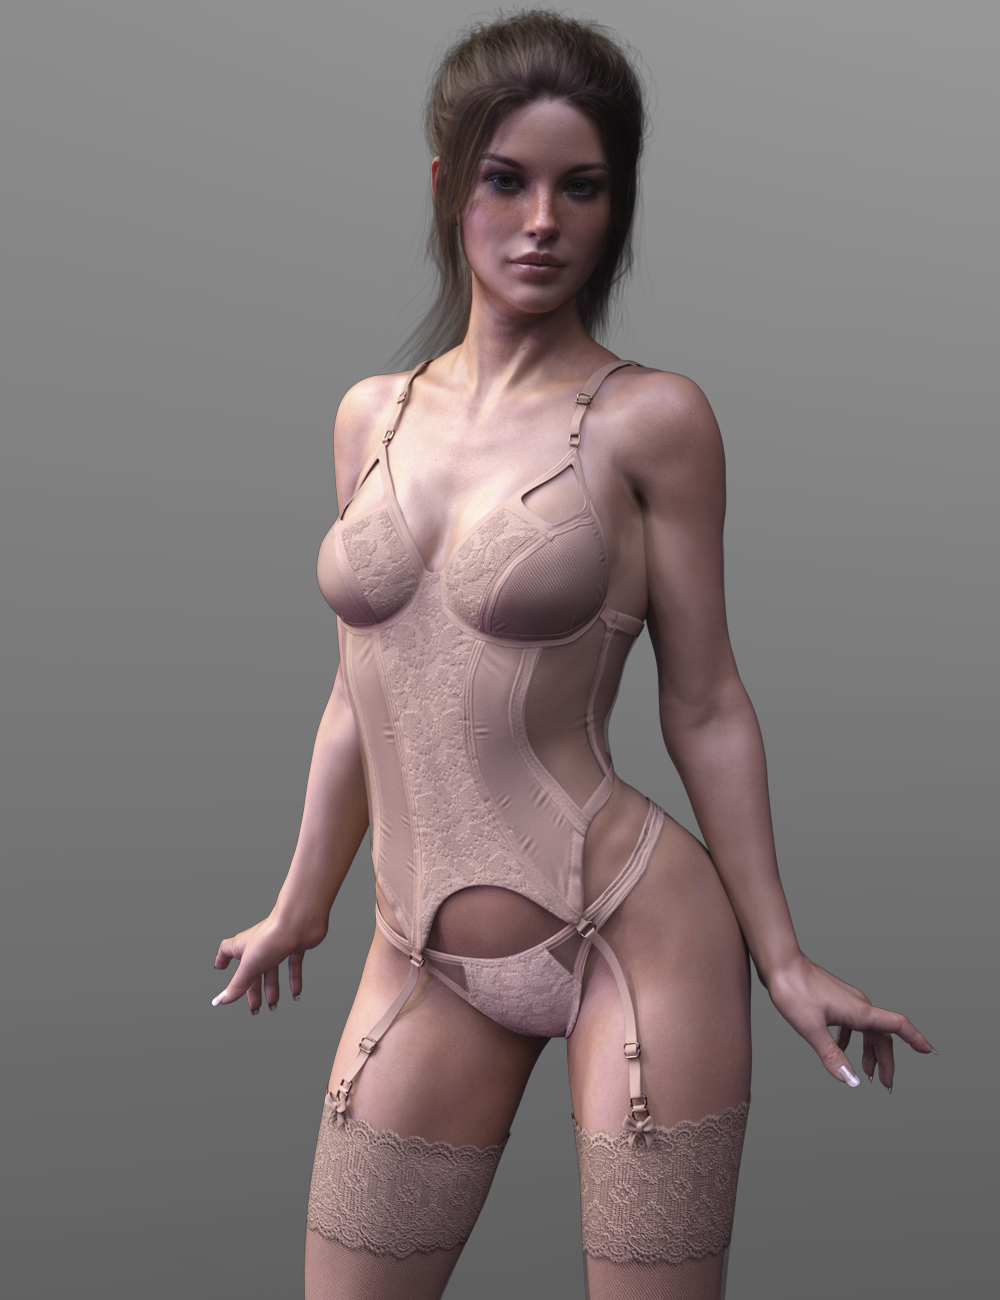 X-Fashion Wild Lace Lingerie Set Genesis 8 Female(s) by: xtrart-3d, 3D Models by Daz 3D